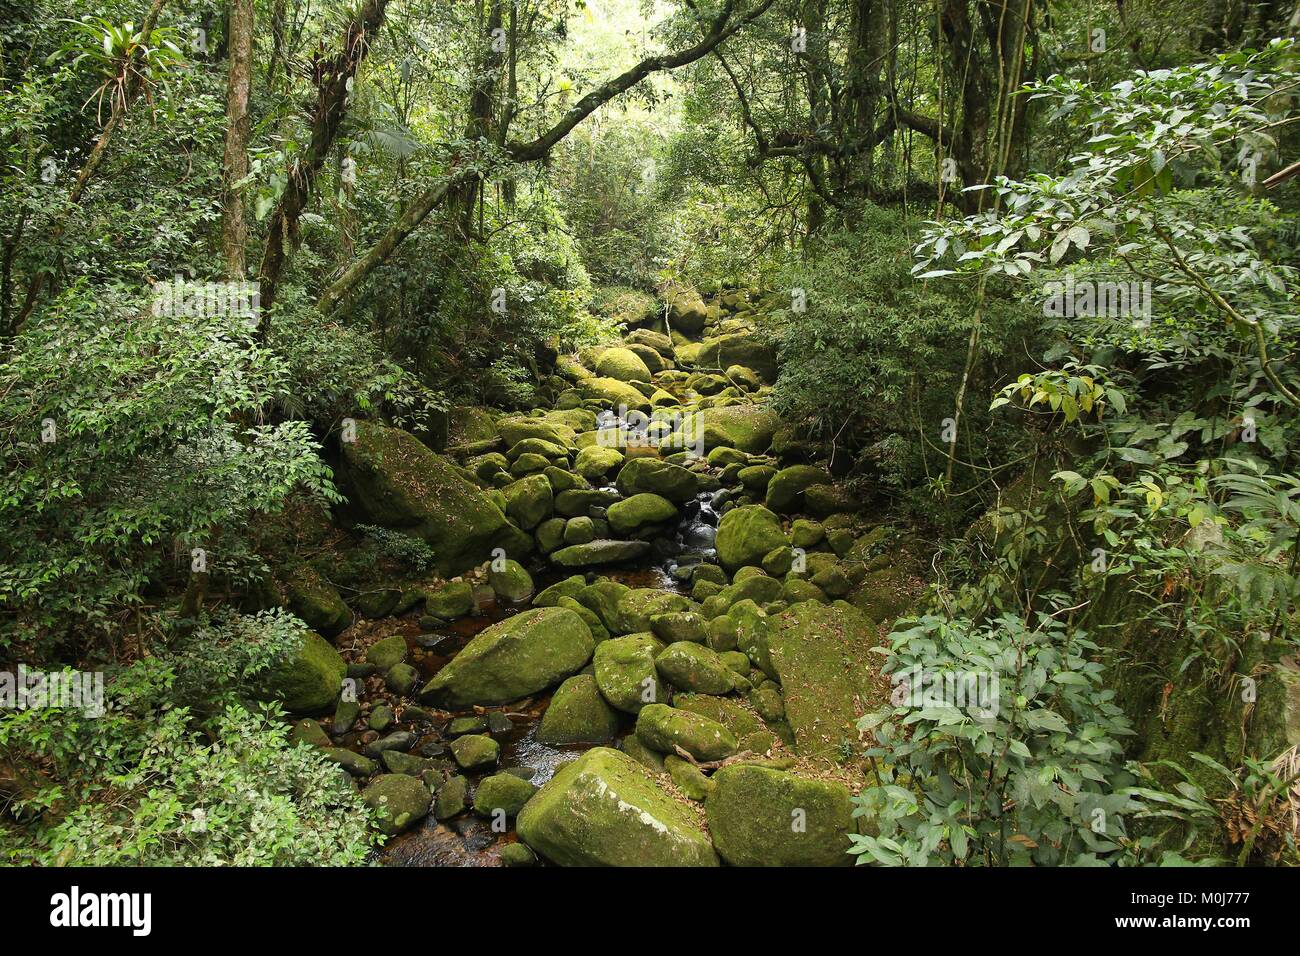 Brasil - vistas a la jungla en la Mata Atlántica (Bosque Atlántico ecosistema) en la Serra dos Orgaos Parque nacional (Estado de Río de Janeiro). Foto de stock